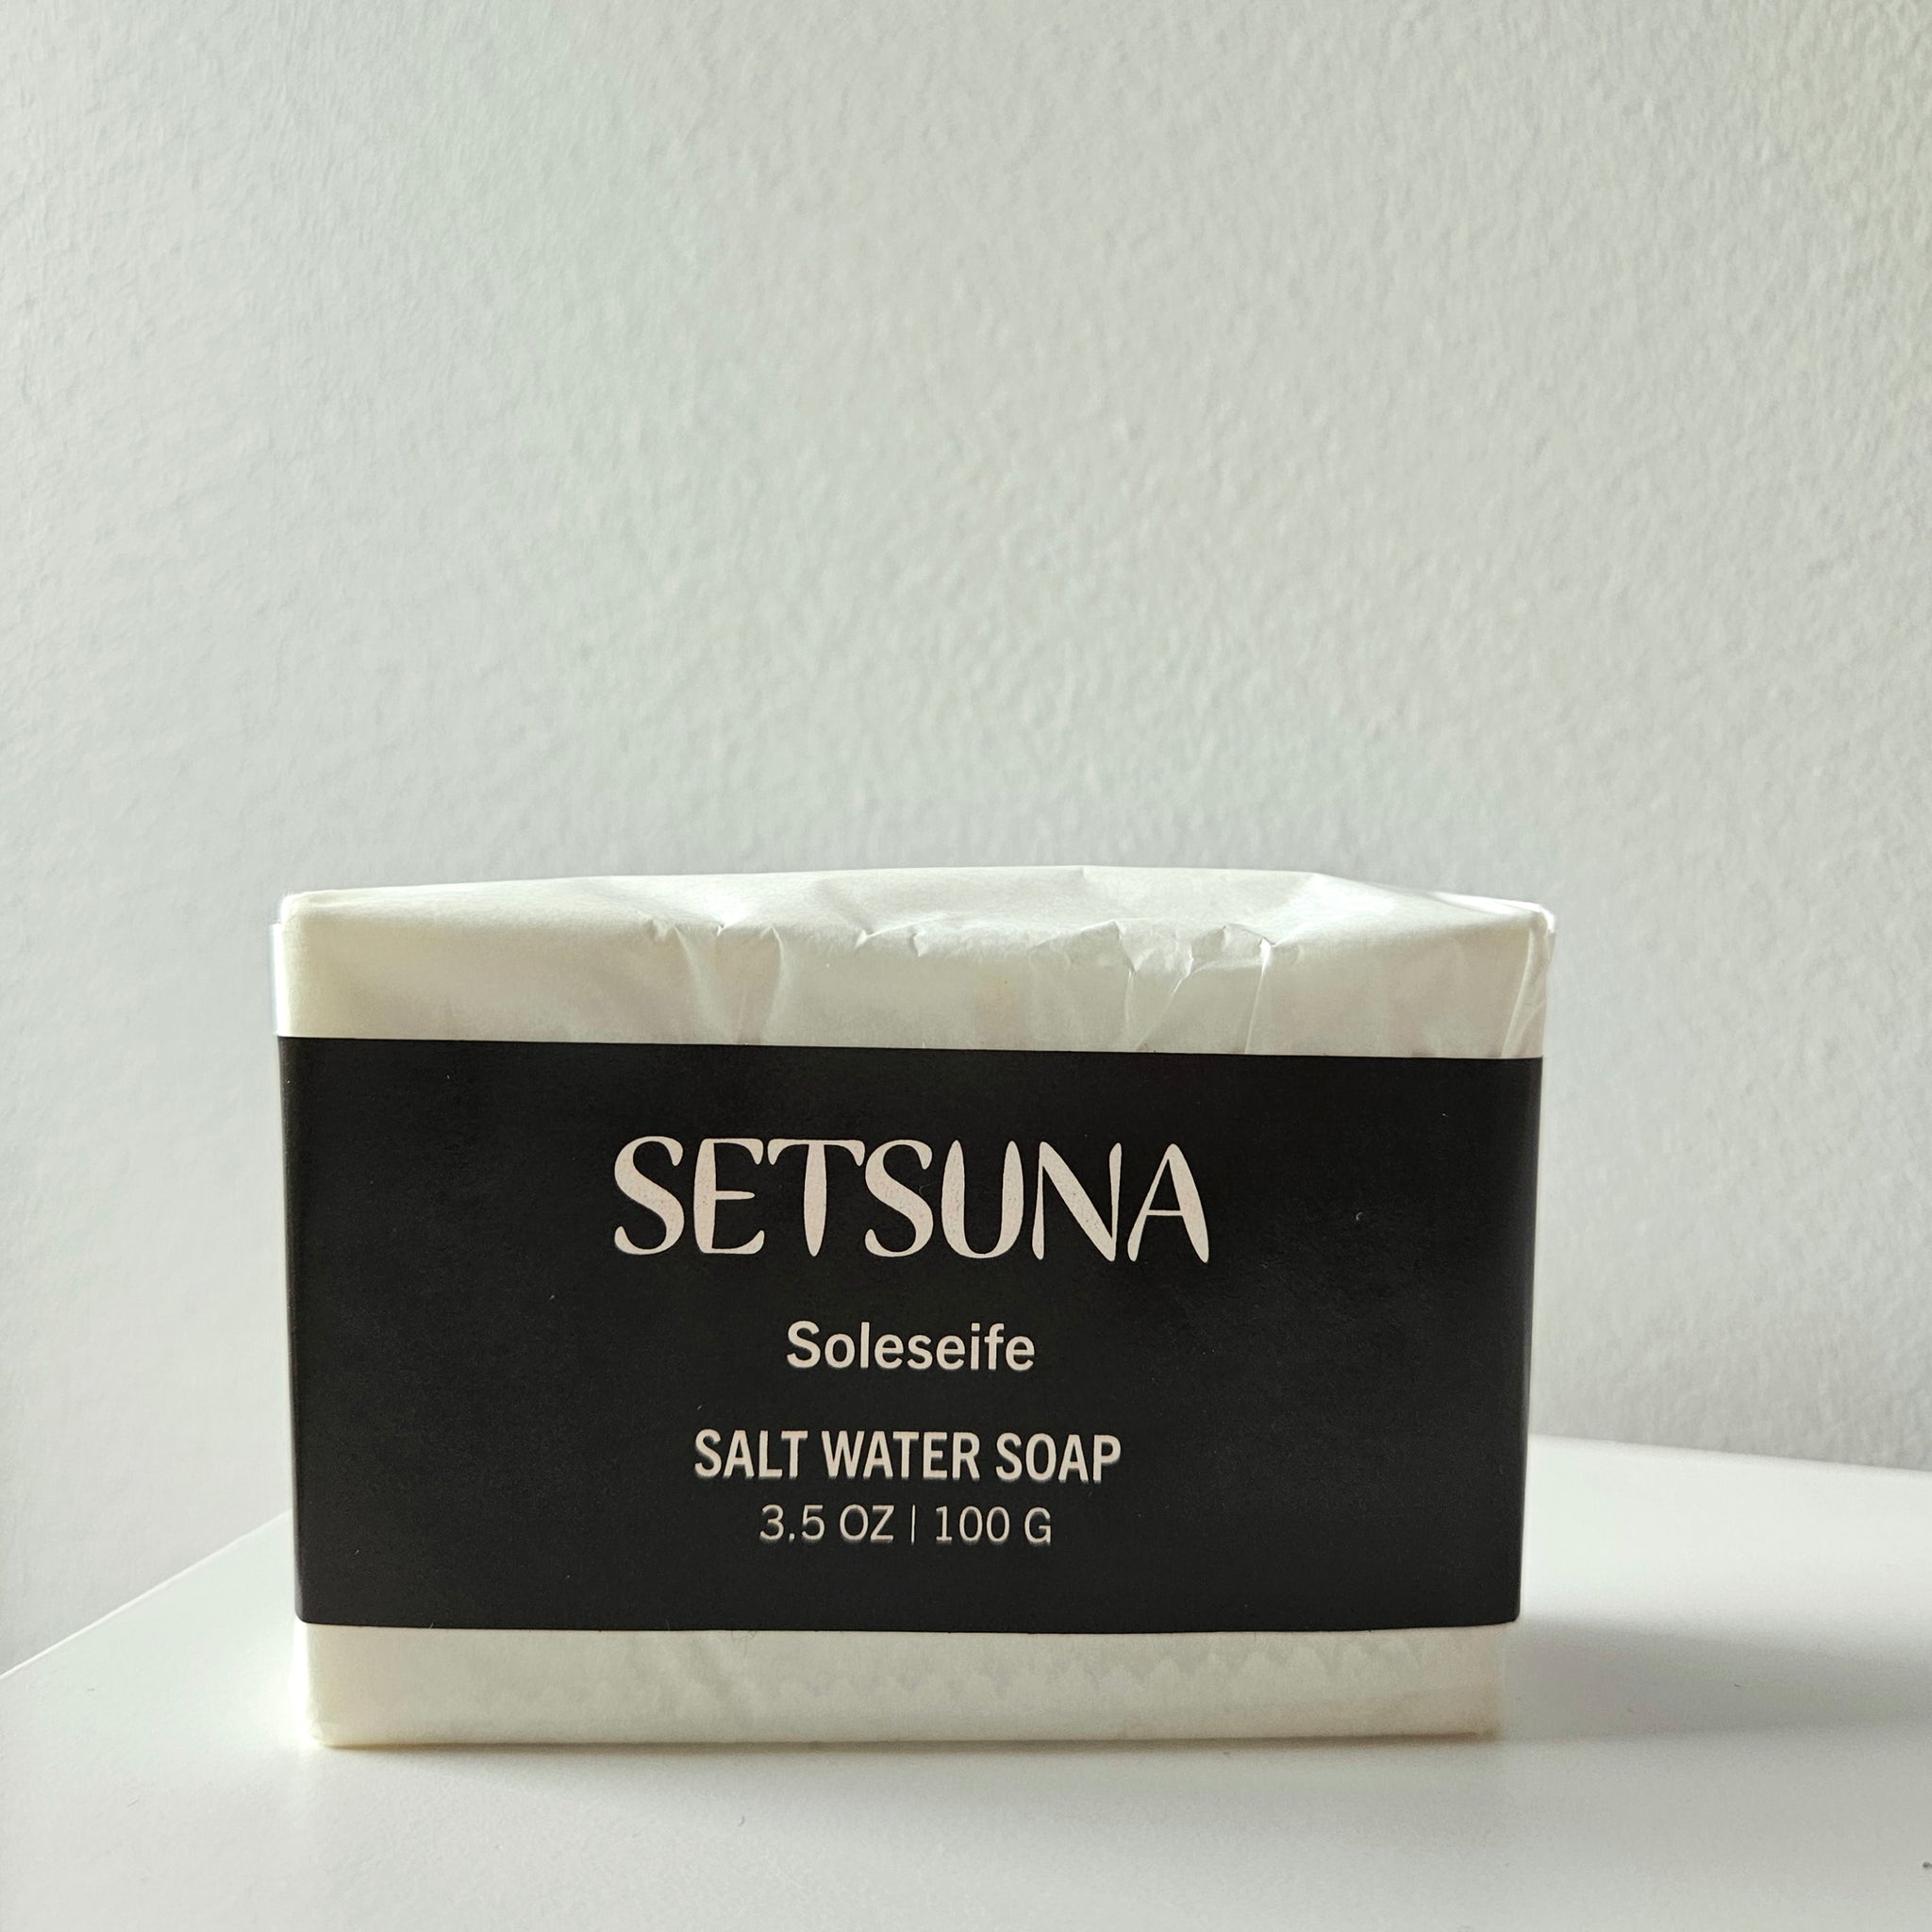 Setsuna Soleseife salt water soap